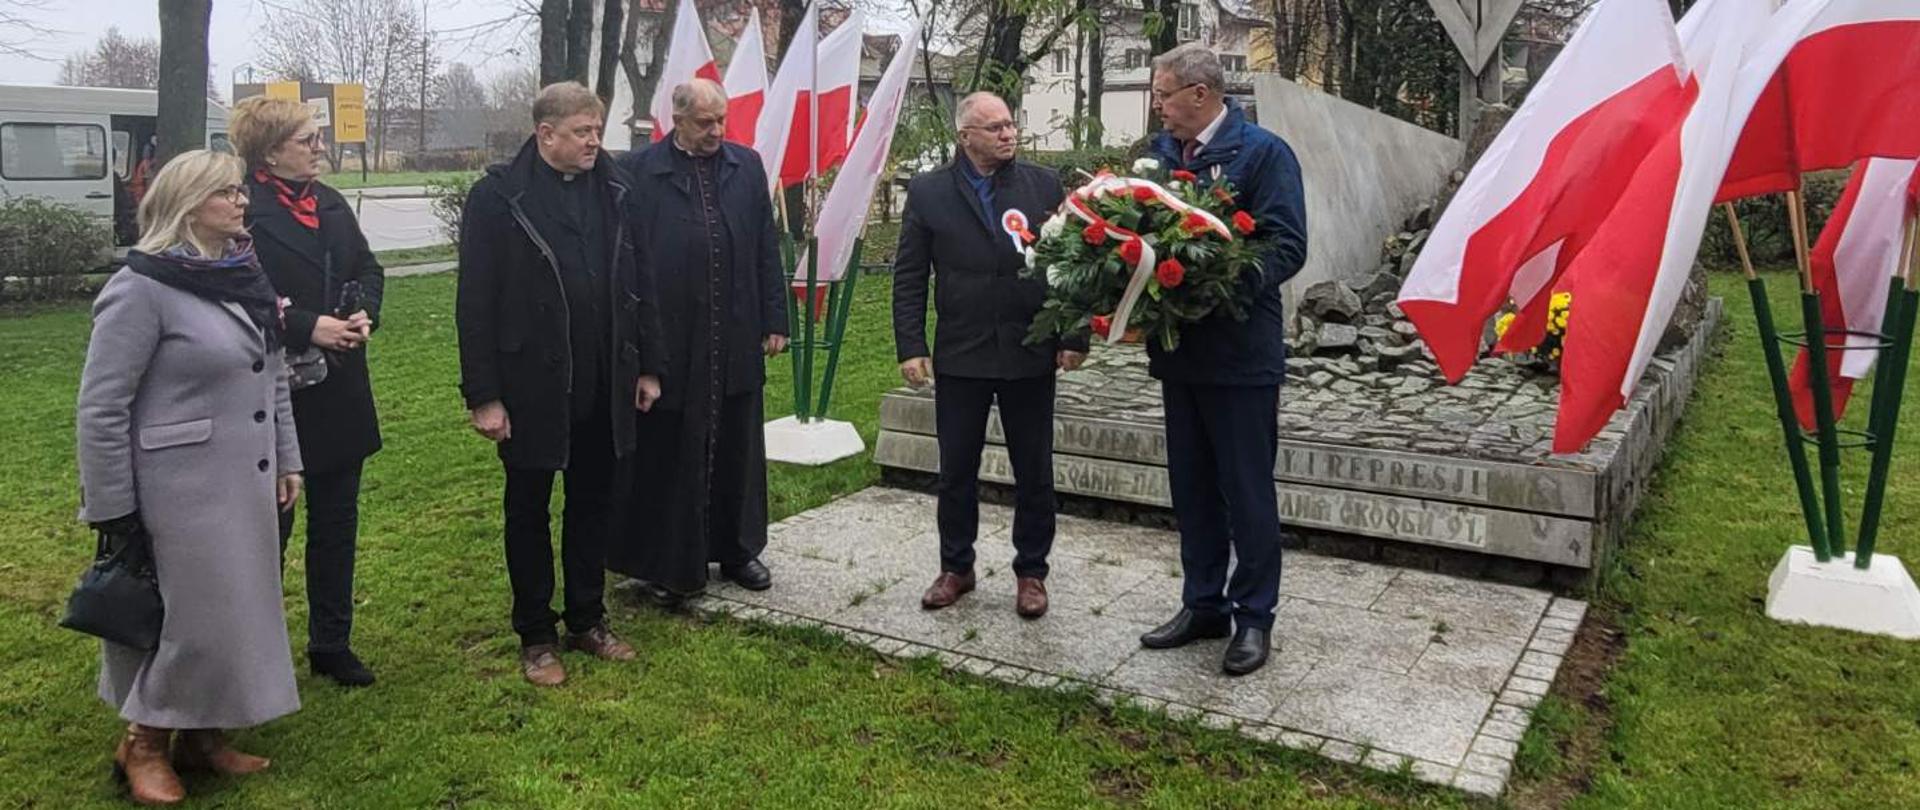 Przedstawiciele delegacji z Łotwy wraz z przedstawicielami Powiatu Hajnowskiego przed pomnikiem